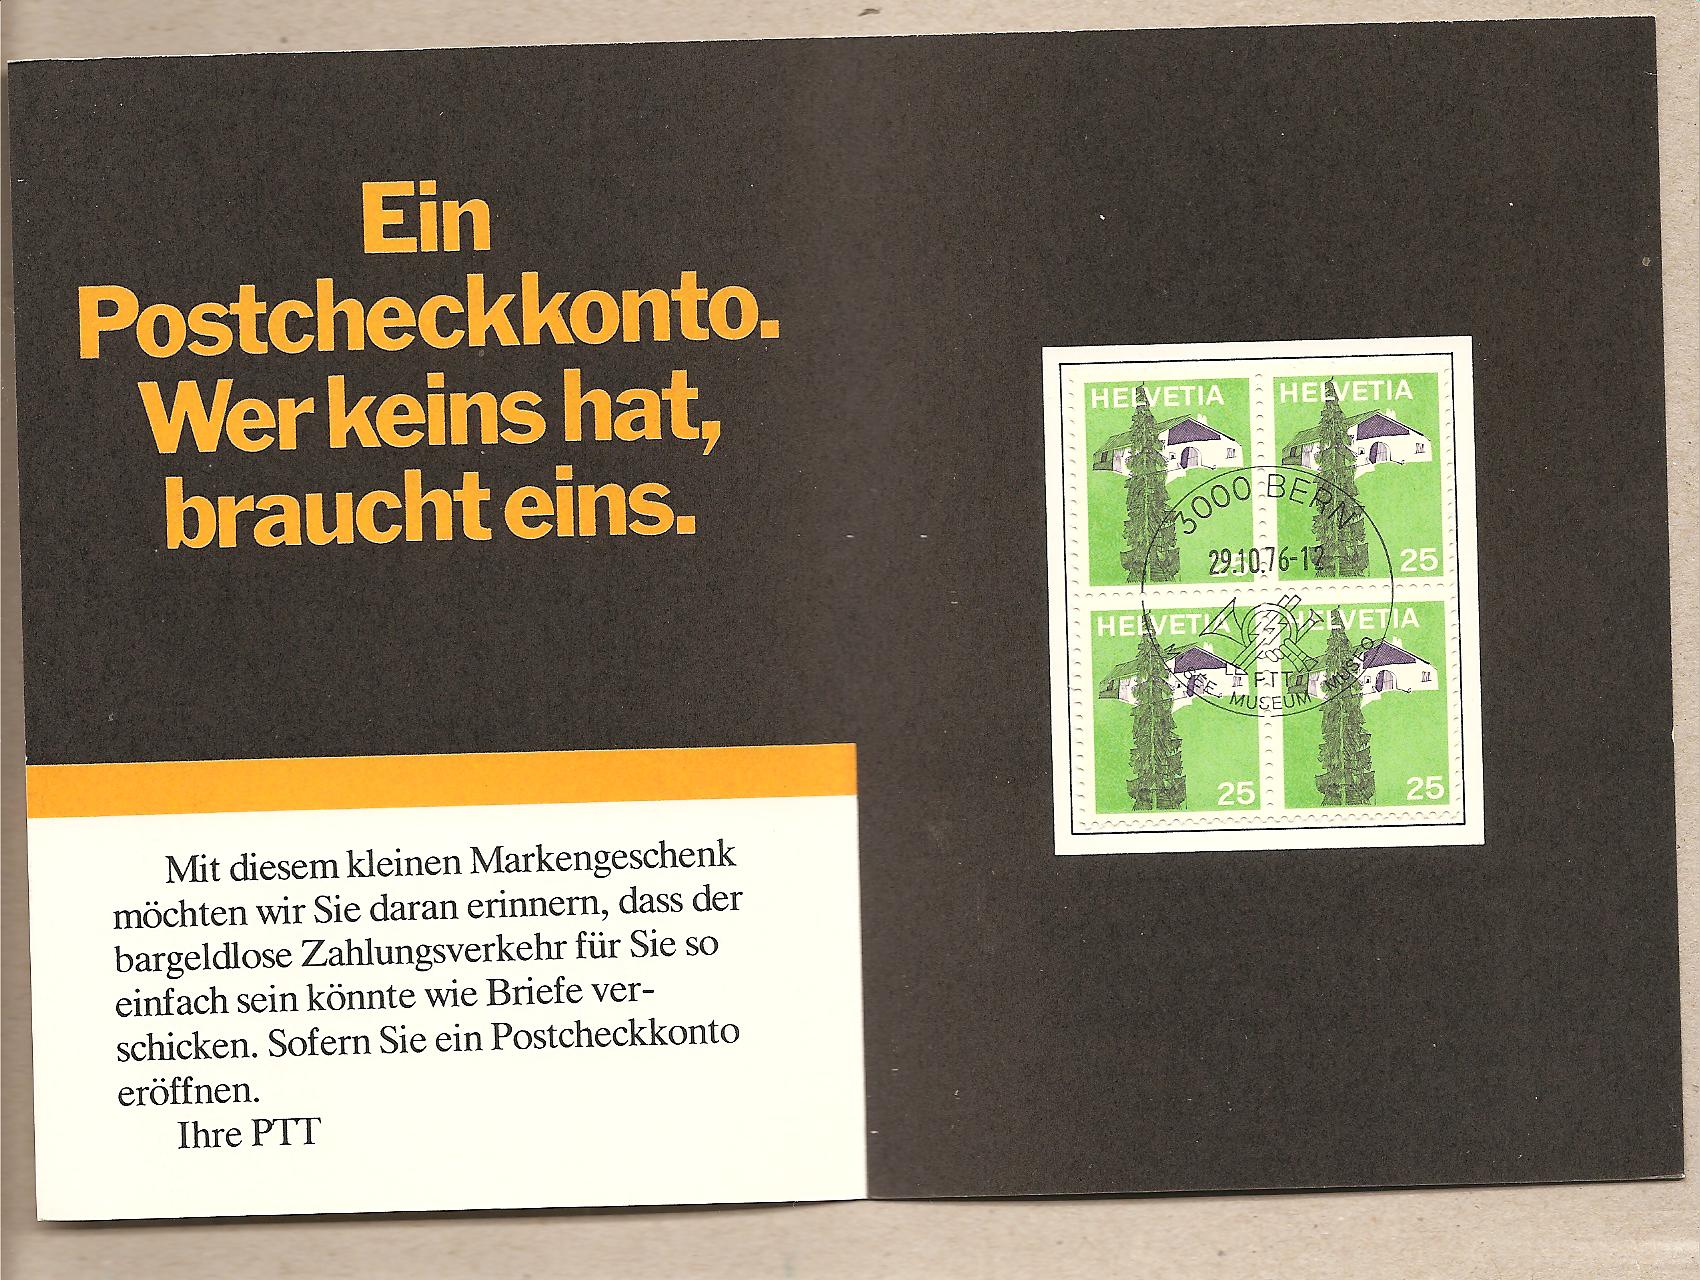 36155 - Svizzera - carnet pubblicitario Poste Svizzere con quartina serie: Paesaggi caratteristici svizzeri - 1973 * G